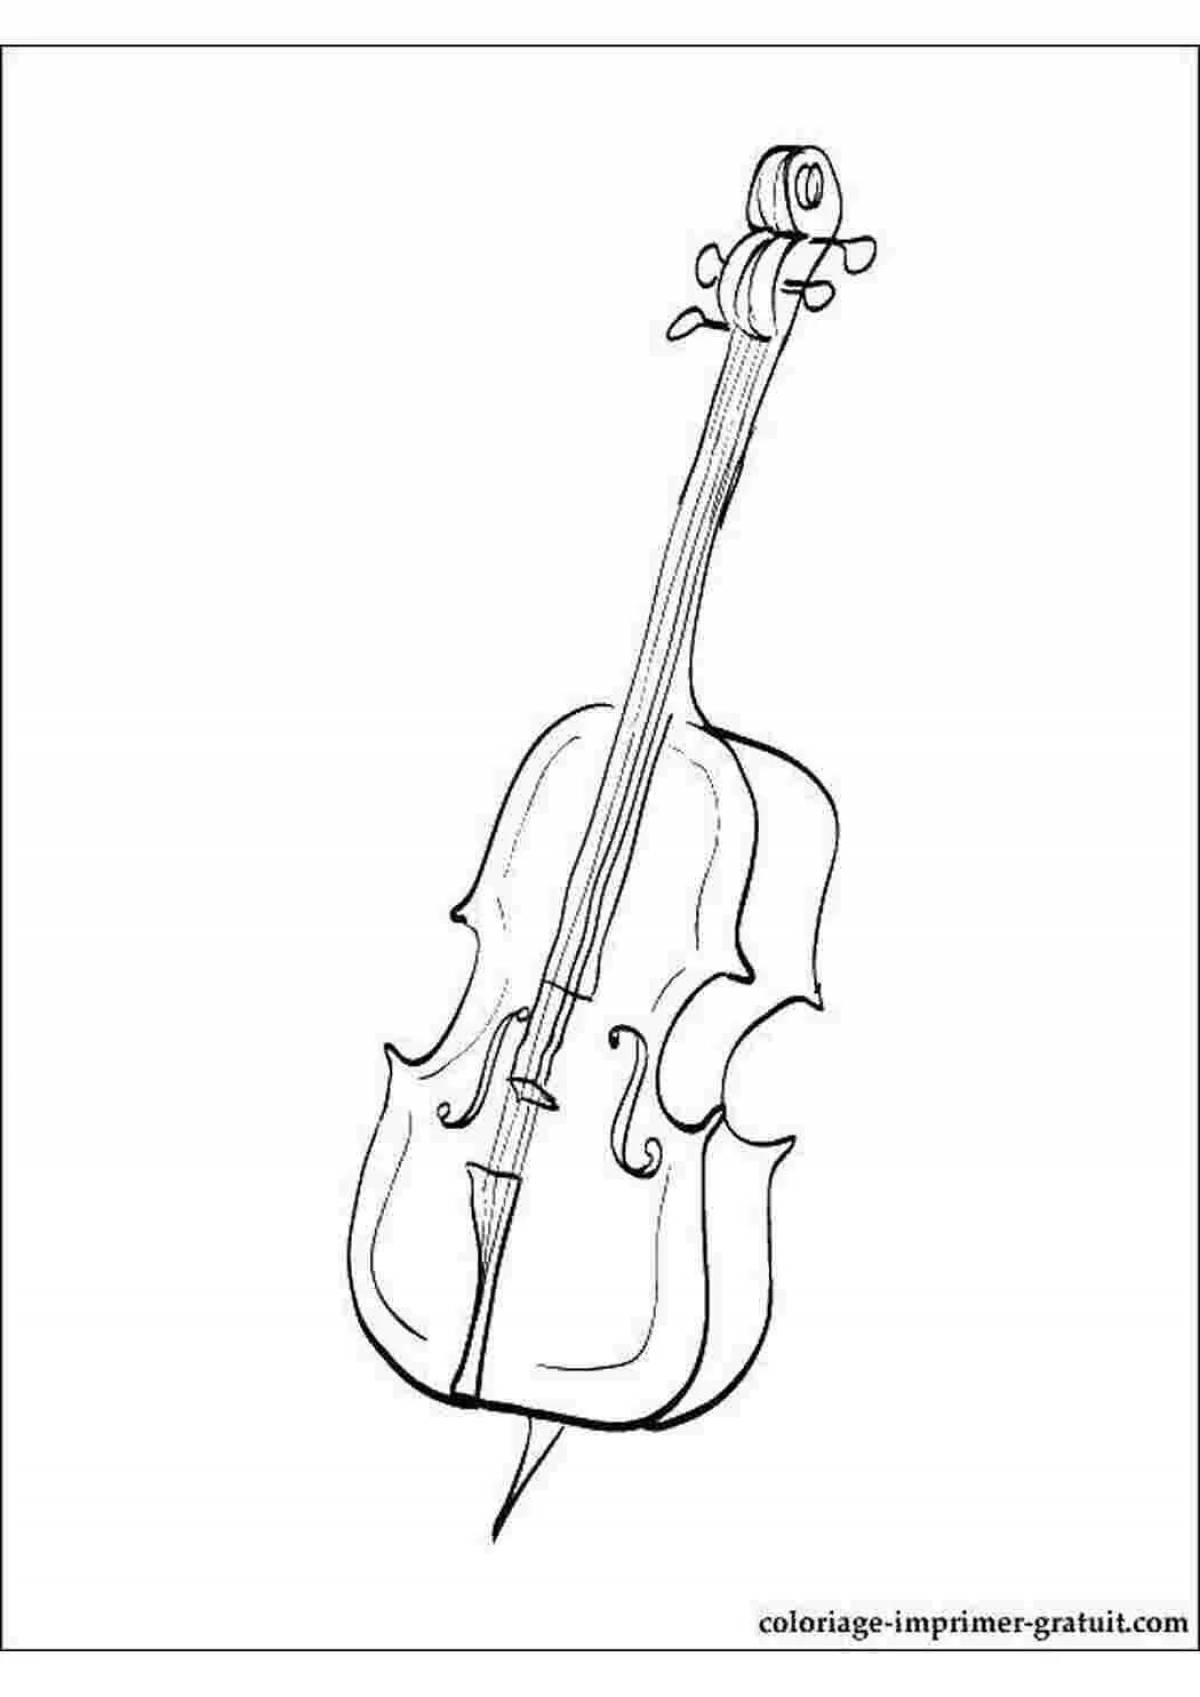 Violin and cello #5